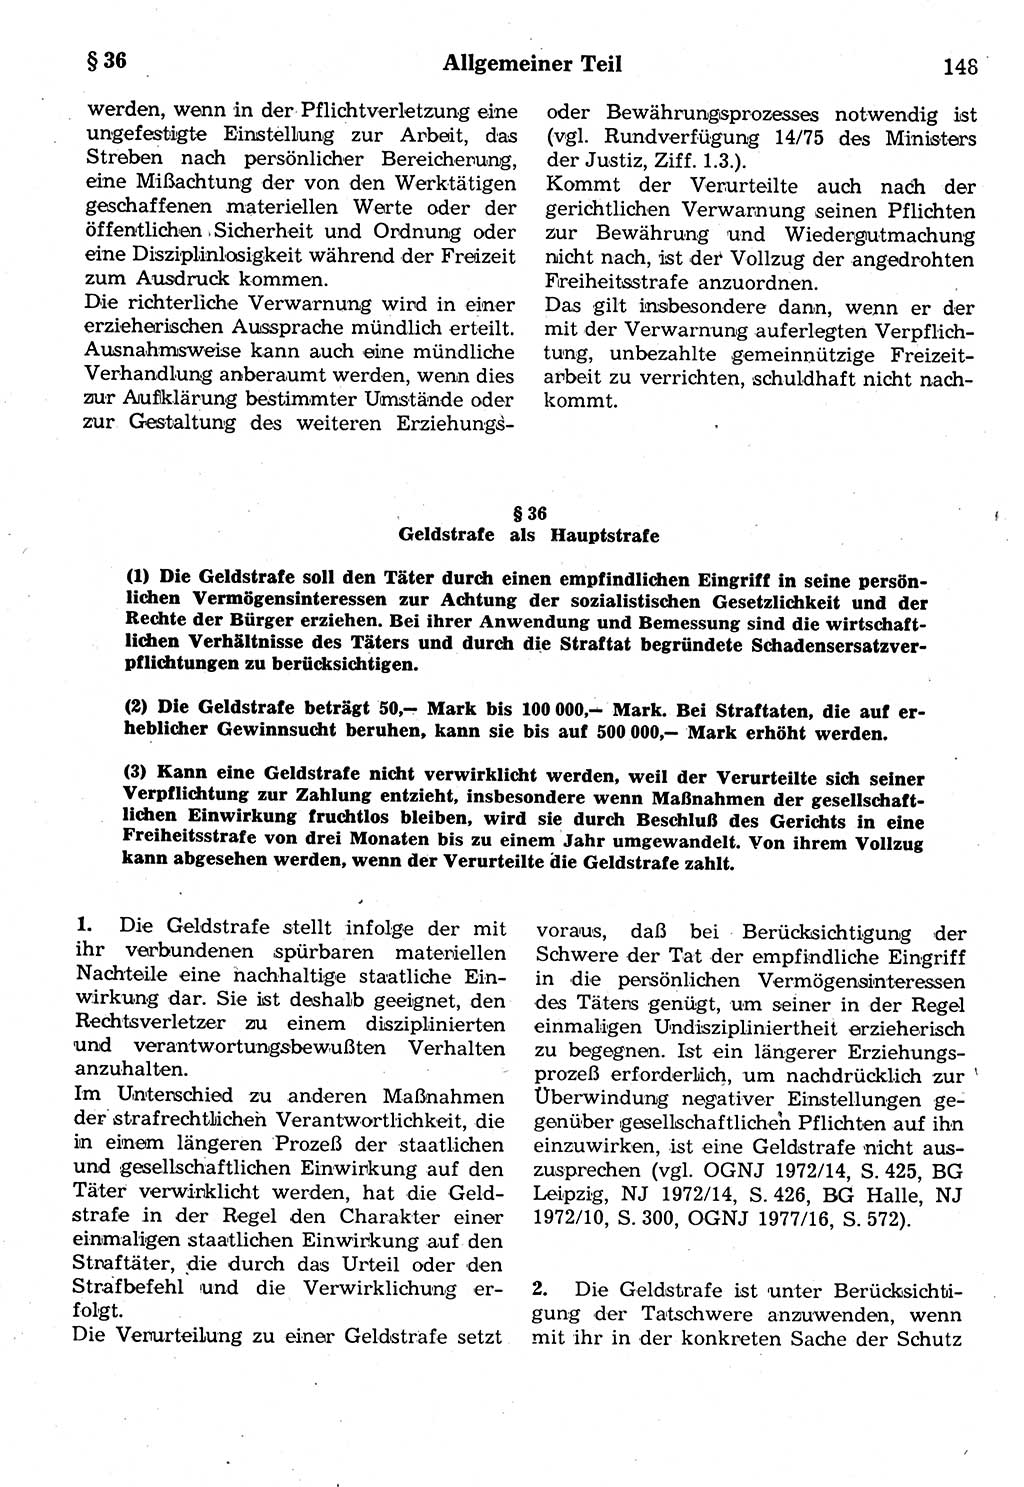 Strafrecht der Deutschen Demokratischen Republik (DDR), Kommentar zum Strafgesetzbuch (StGB) 1987, Seite 148 (Strafr. DDR Komm. StGB 1987, S. 148)